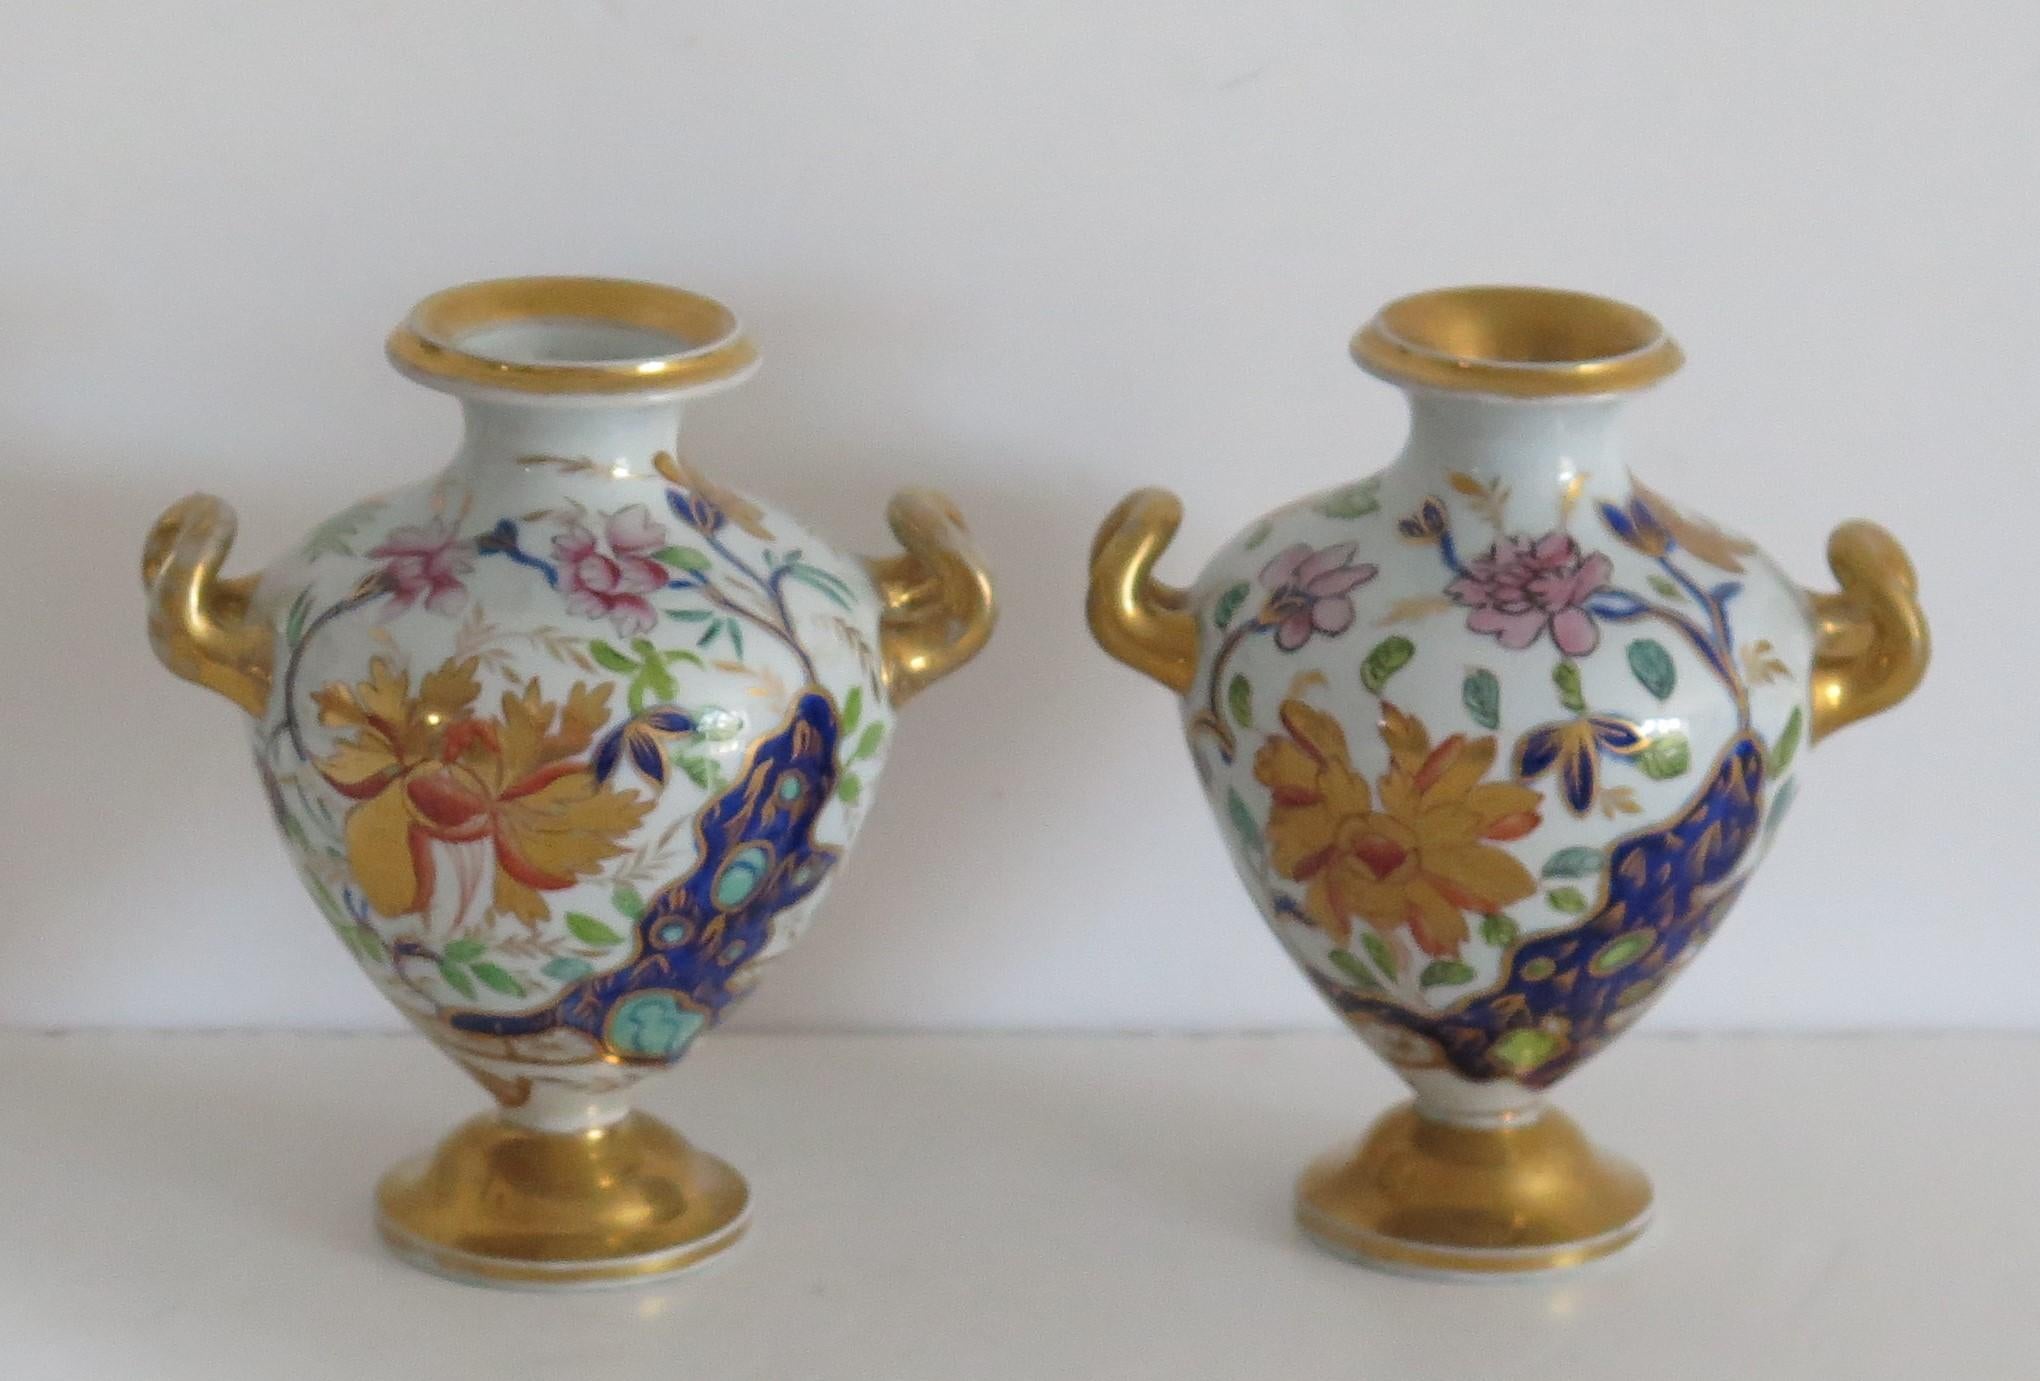 Dies ist ein feines und seltenes Paar von Miniatur-Mason's Eisenstein Vasen oder Urnen, handbemalt in der schönen 